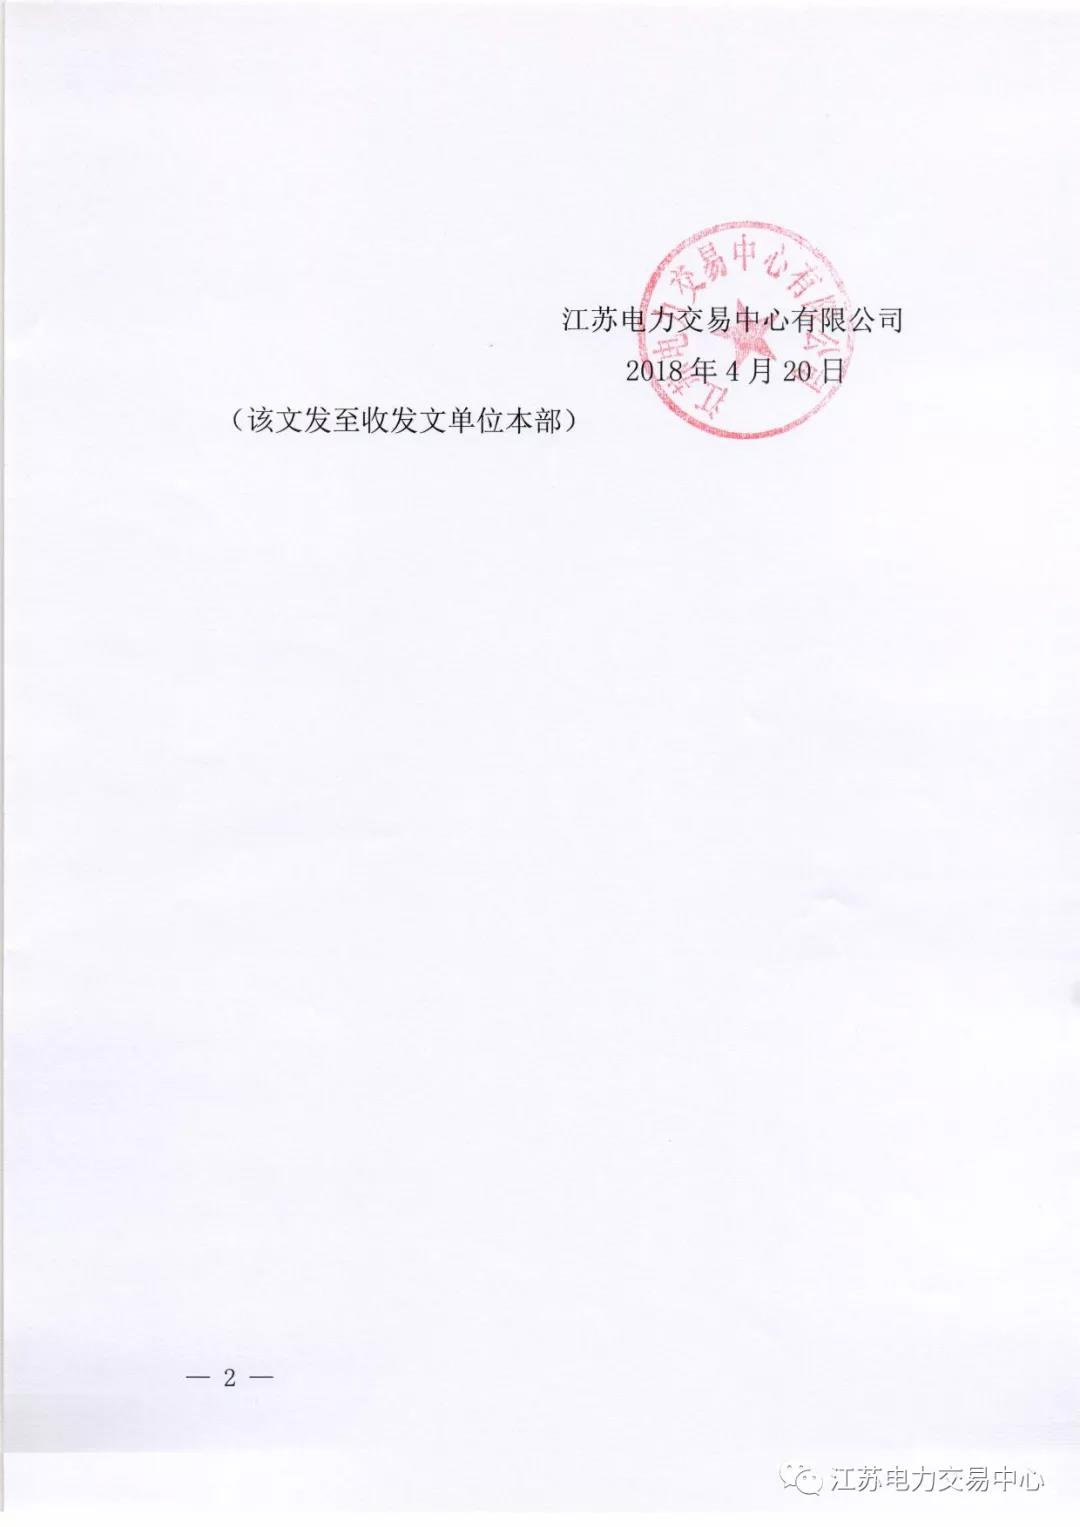 【江苏电力交易中心】《关于公示南京世纪航凯售电有限公司自愿退出江苏电力市场的公告》